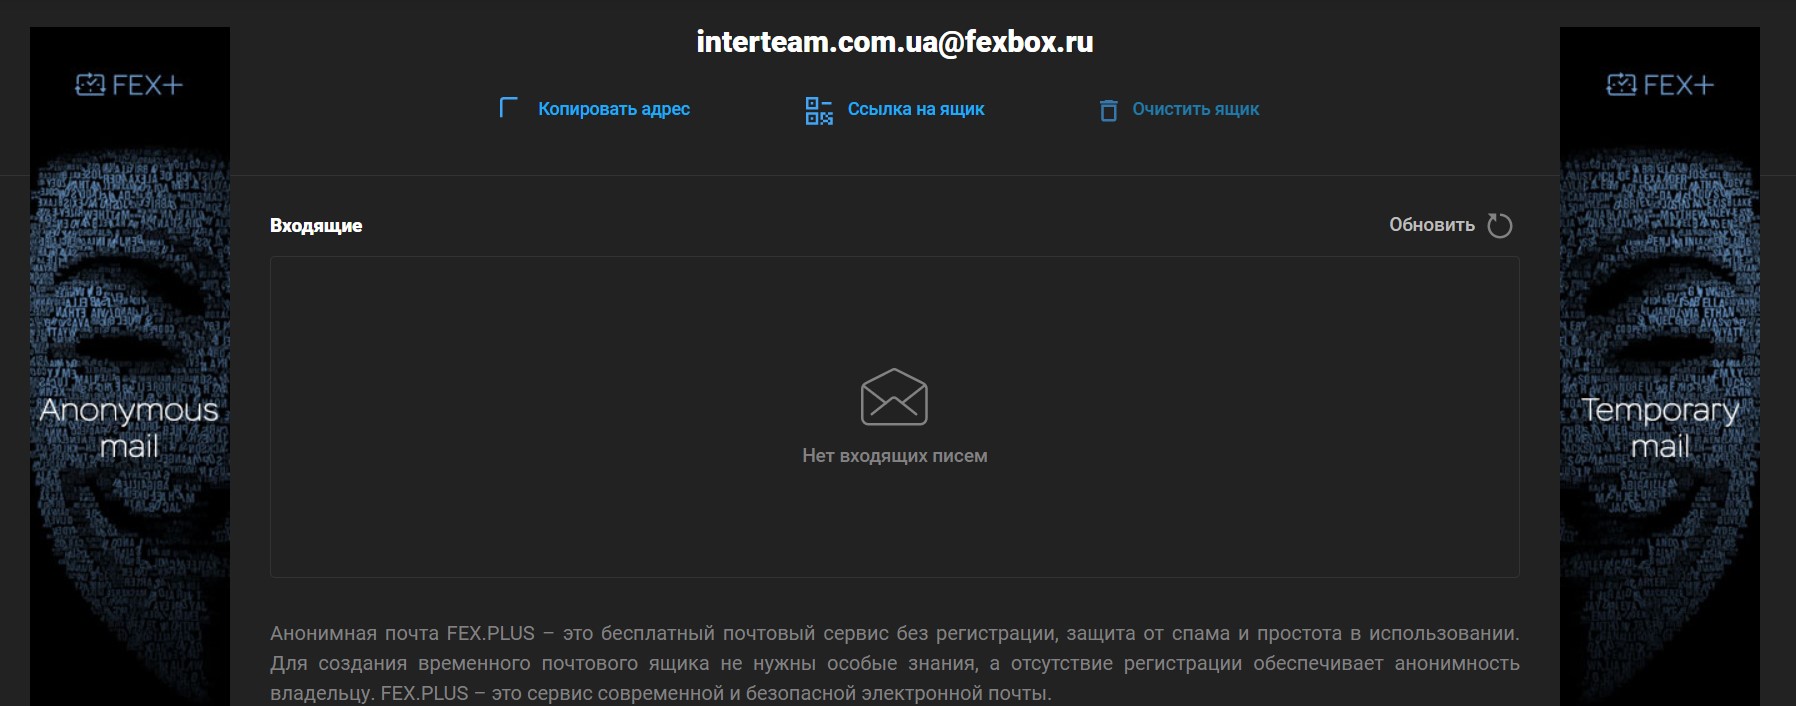 Забудьте о спаме с мгновенной анонимной почтой FEX+